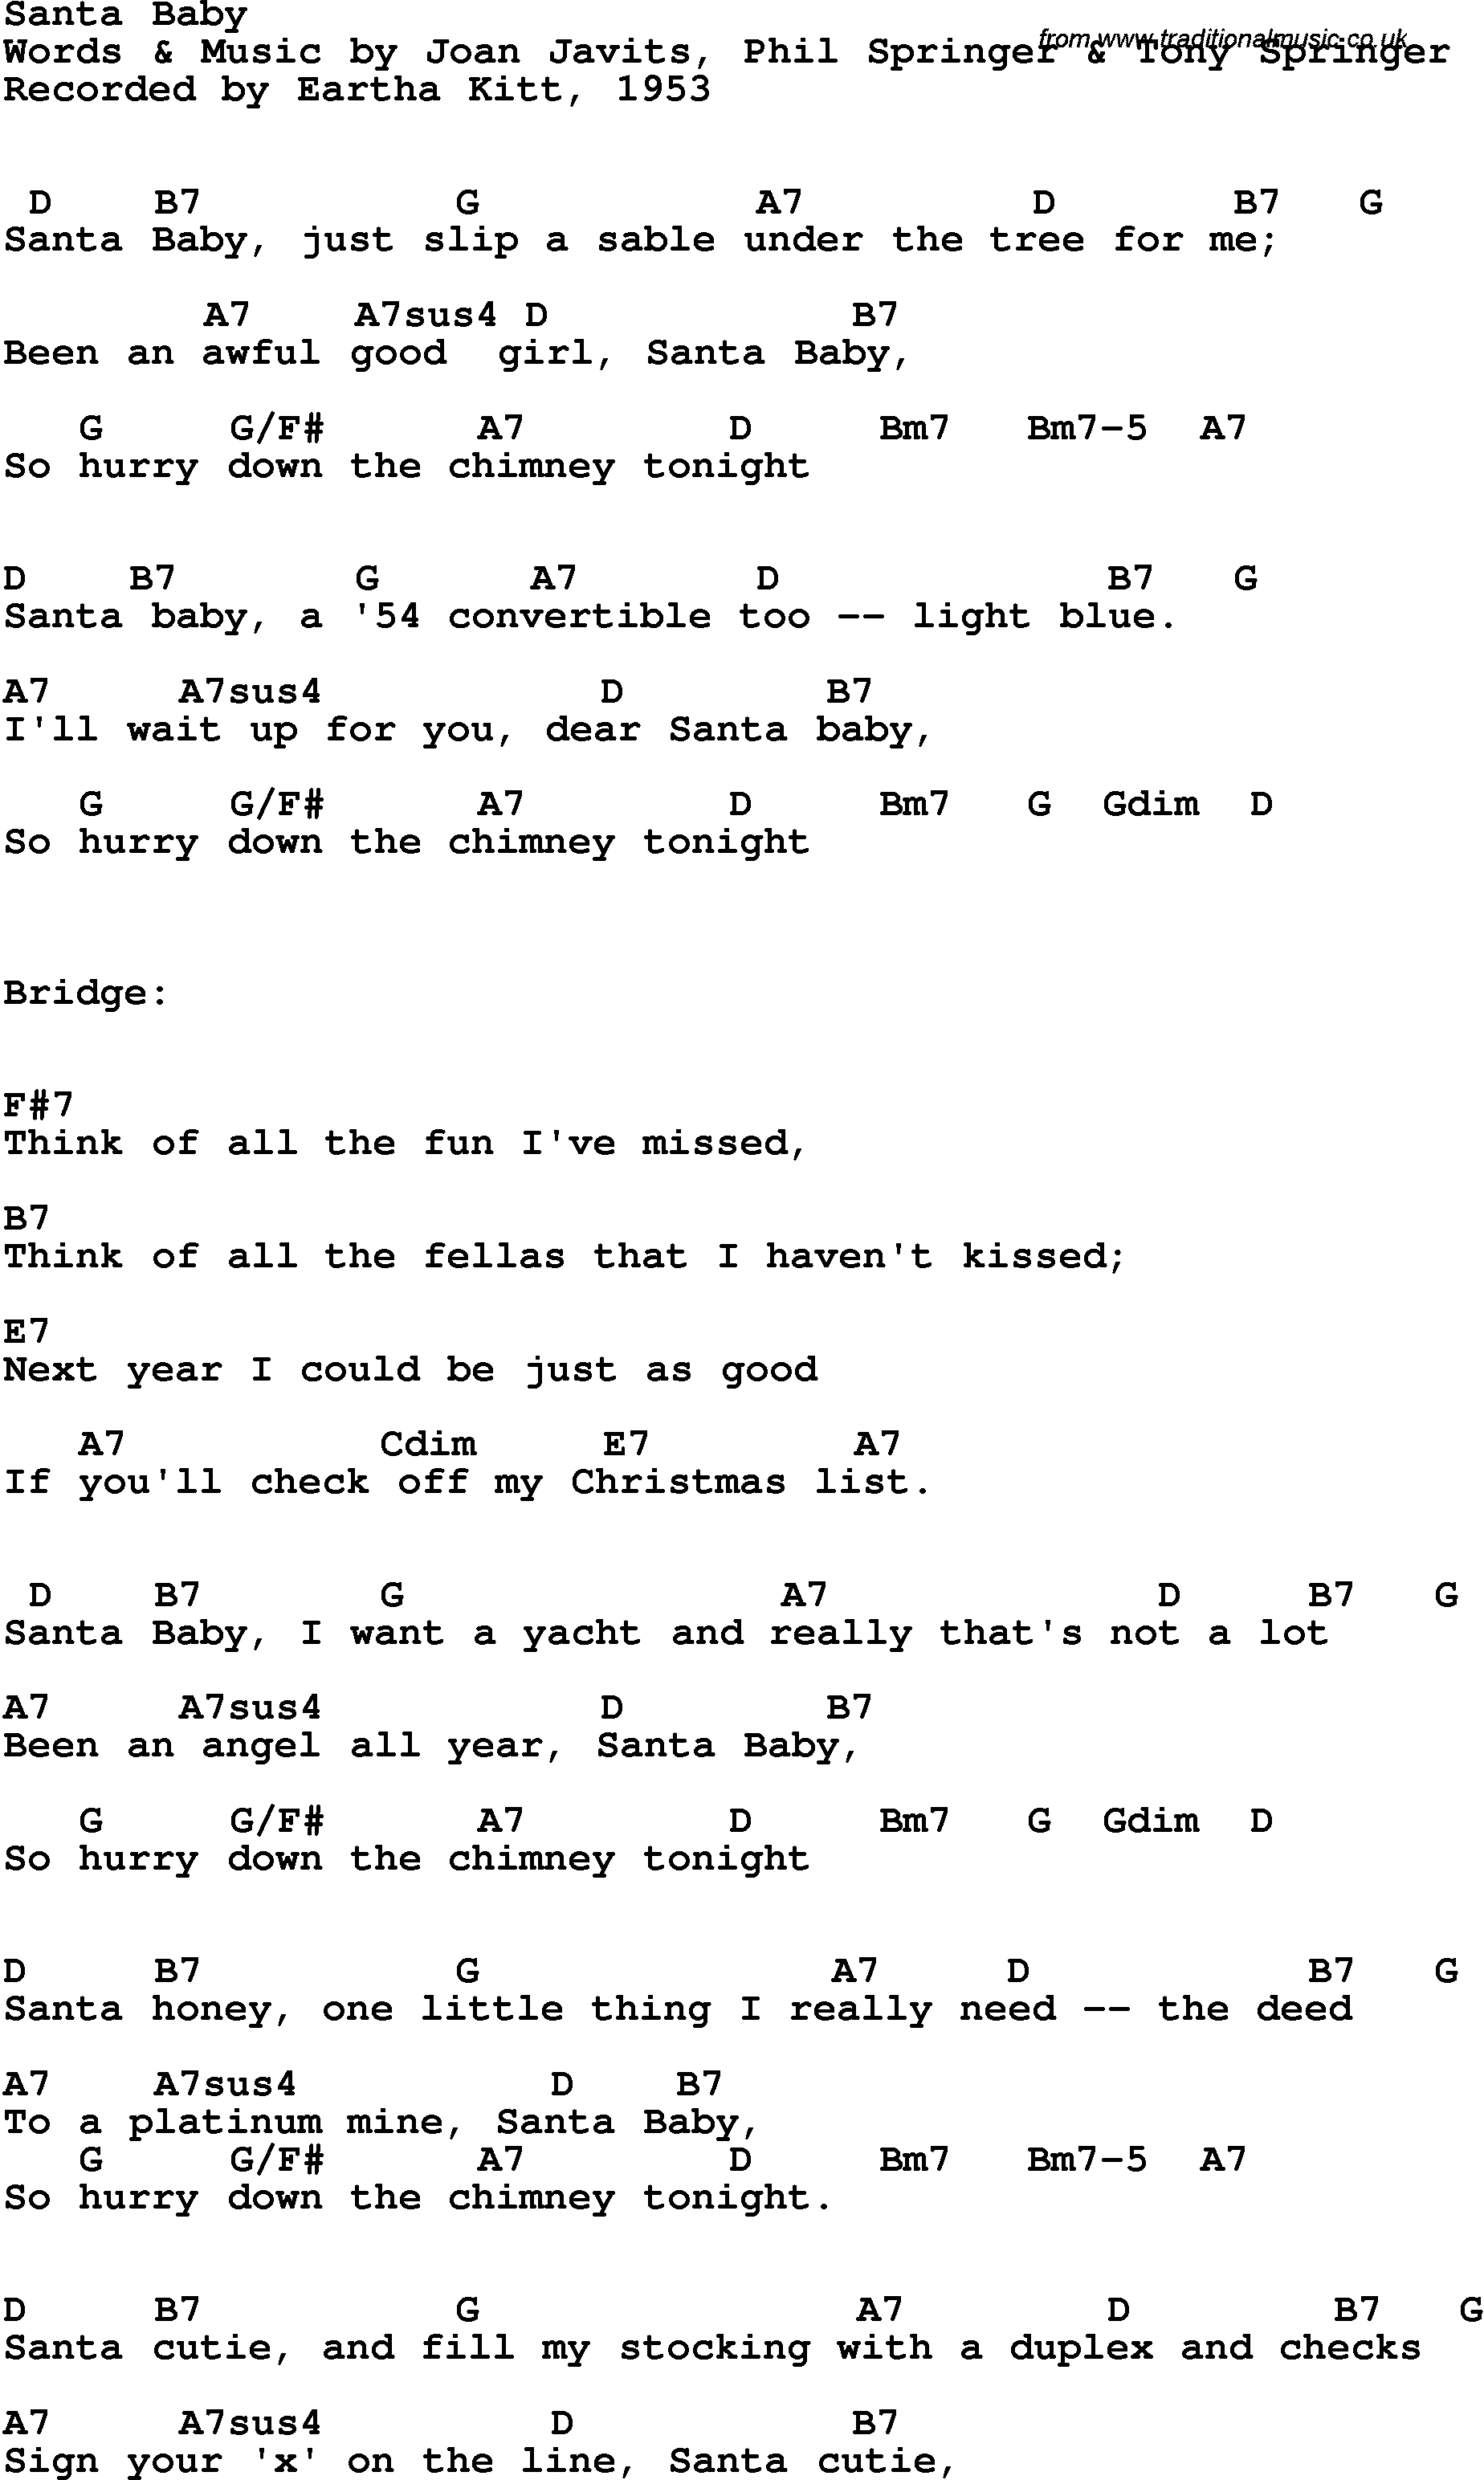 Song Lyrics with guitar chords for Santa Baby - Eartha Kitt, 1953